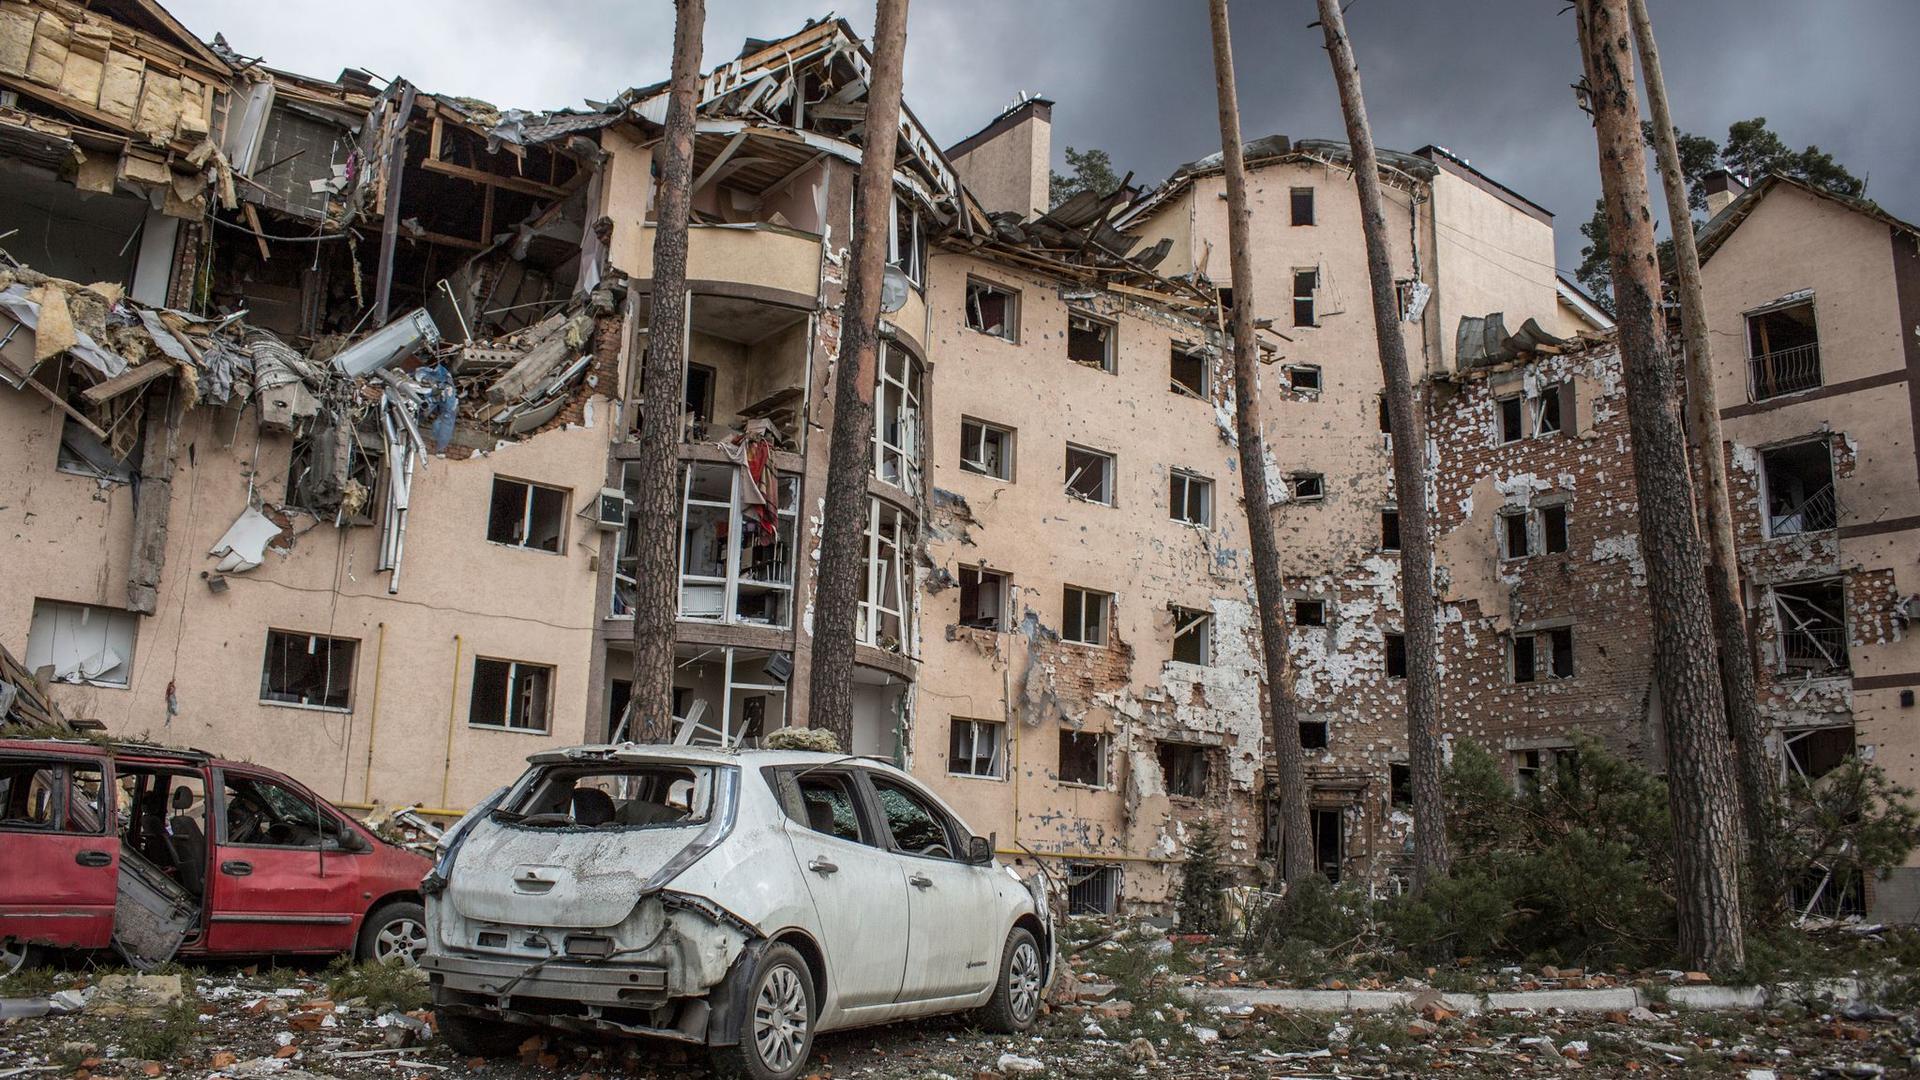 Ein zerstörtes Wohnhaus in Irpin nahe Kiew nach dem Beschuss durch russisches Militär.